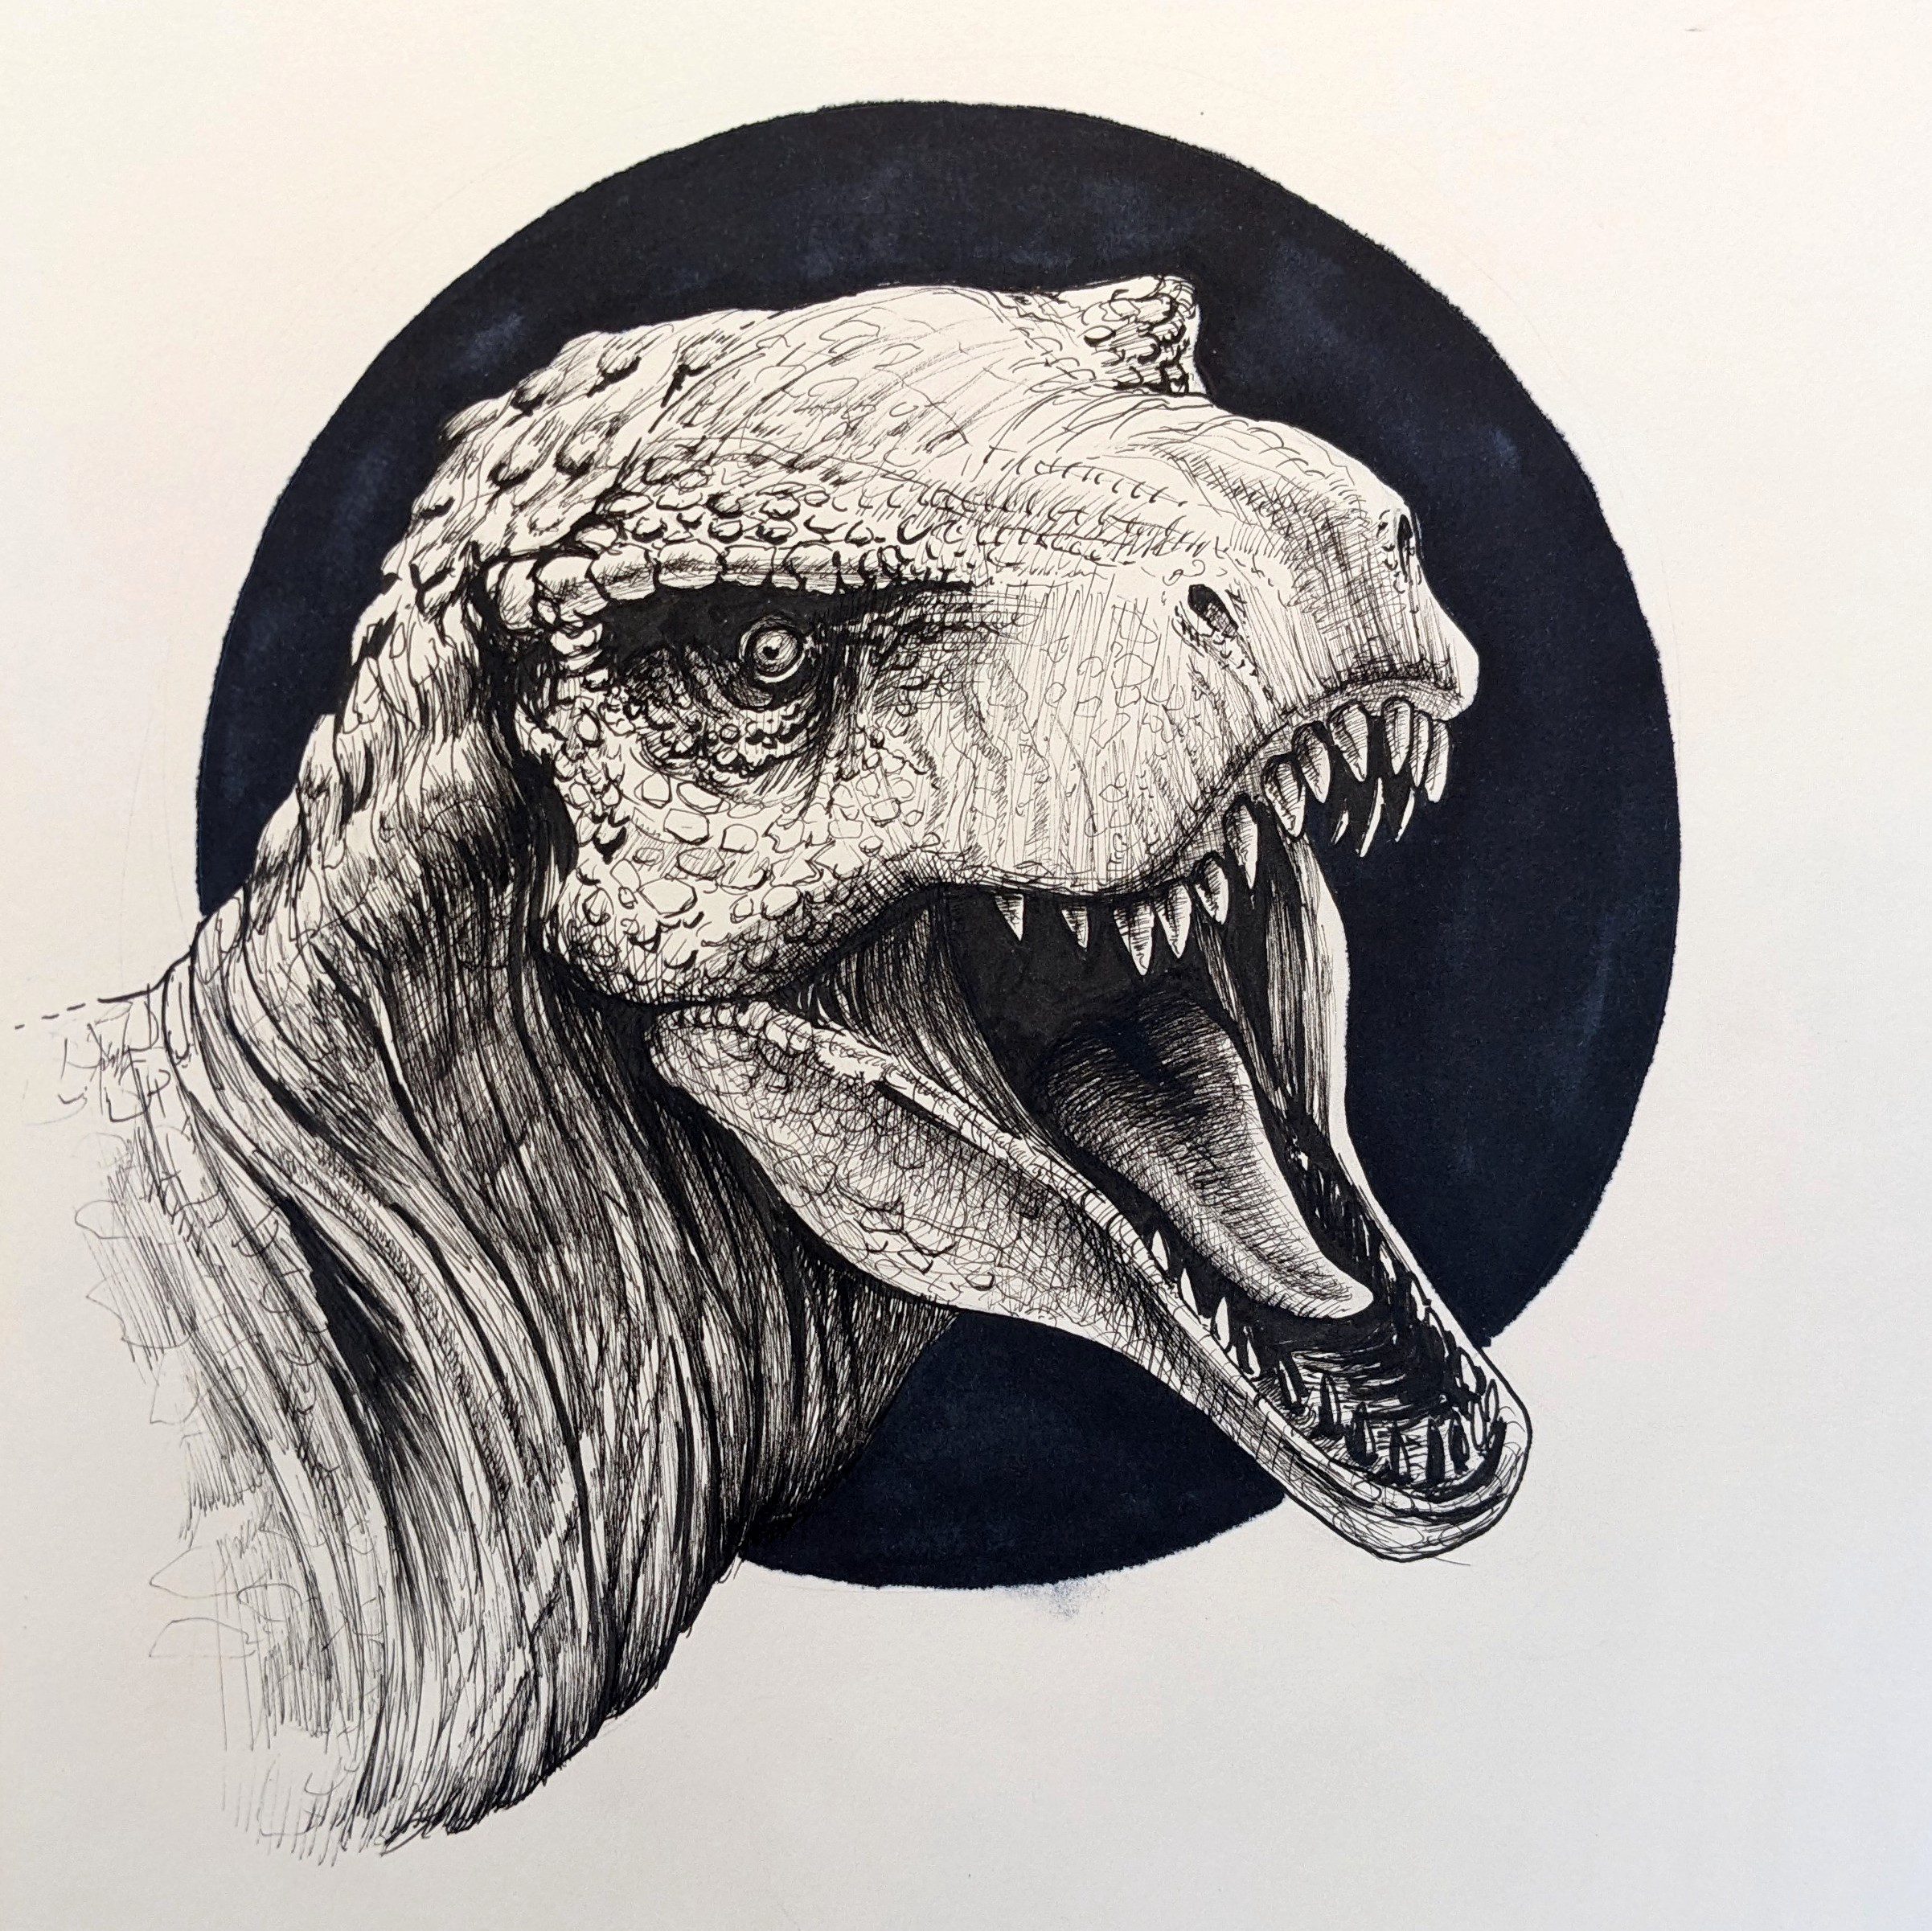 dinosaur sketch